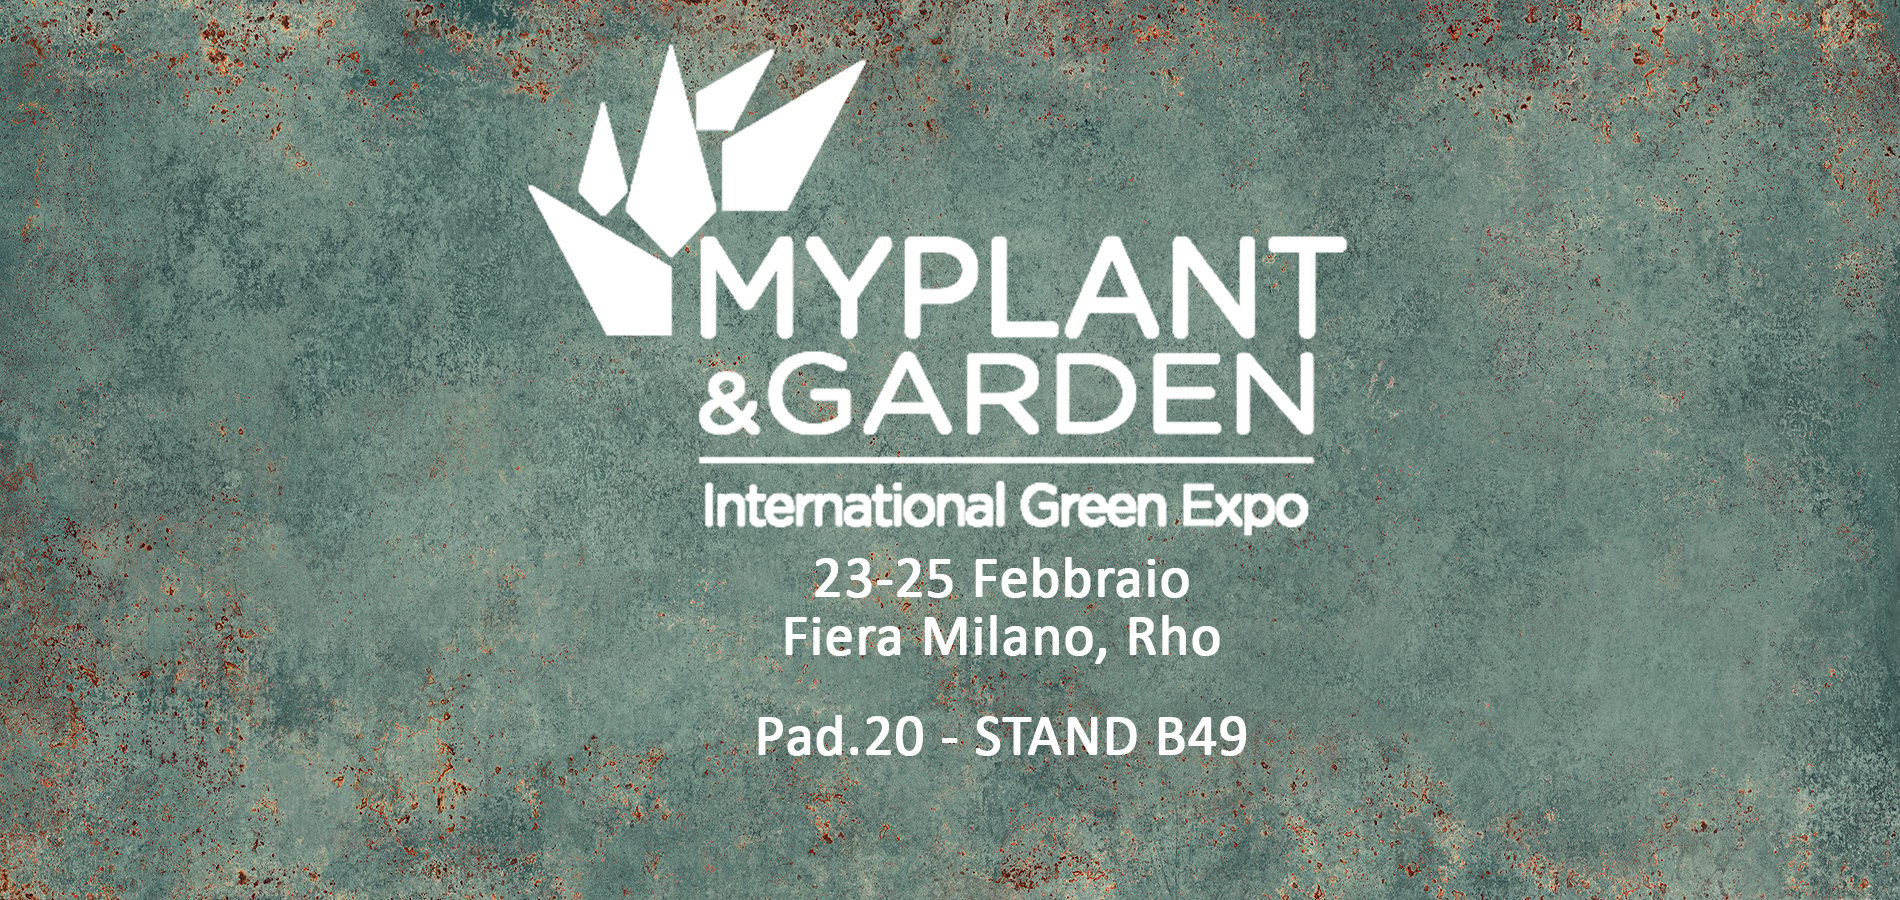 MyPlant&Garden partecipation